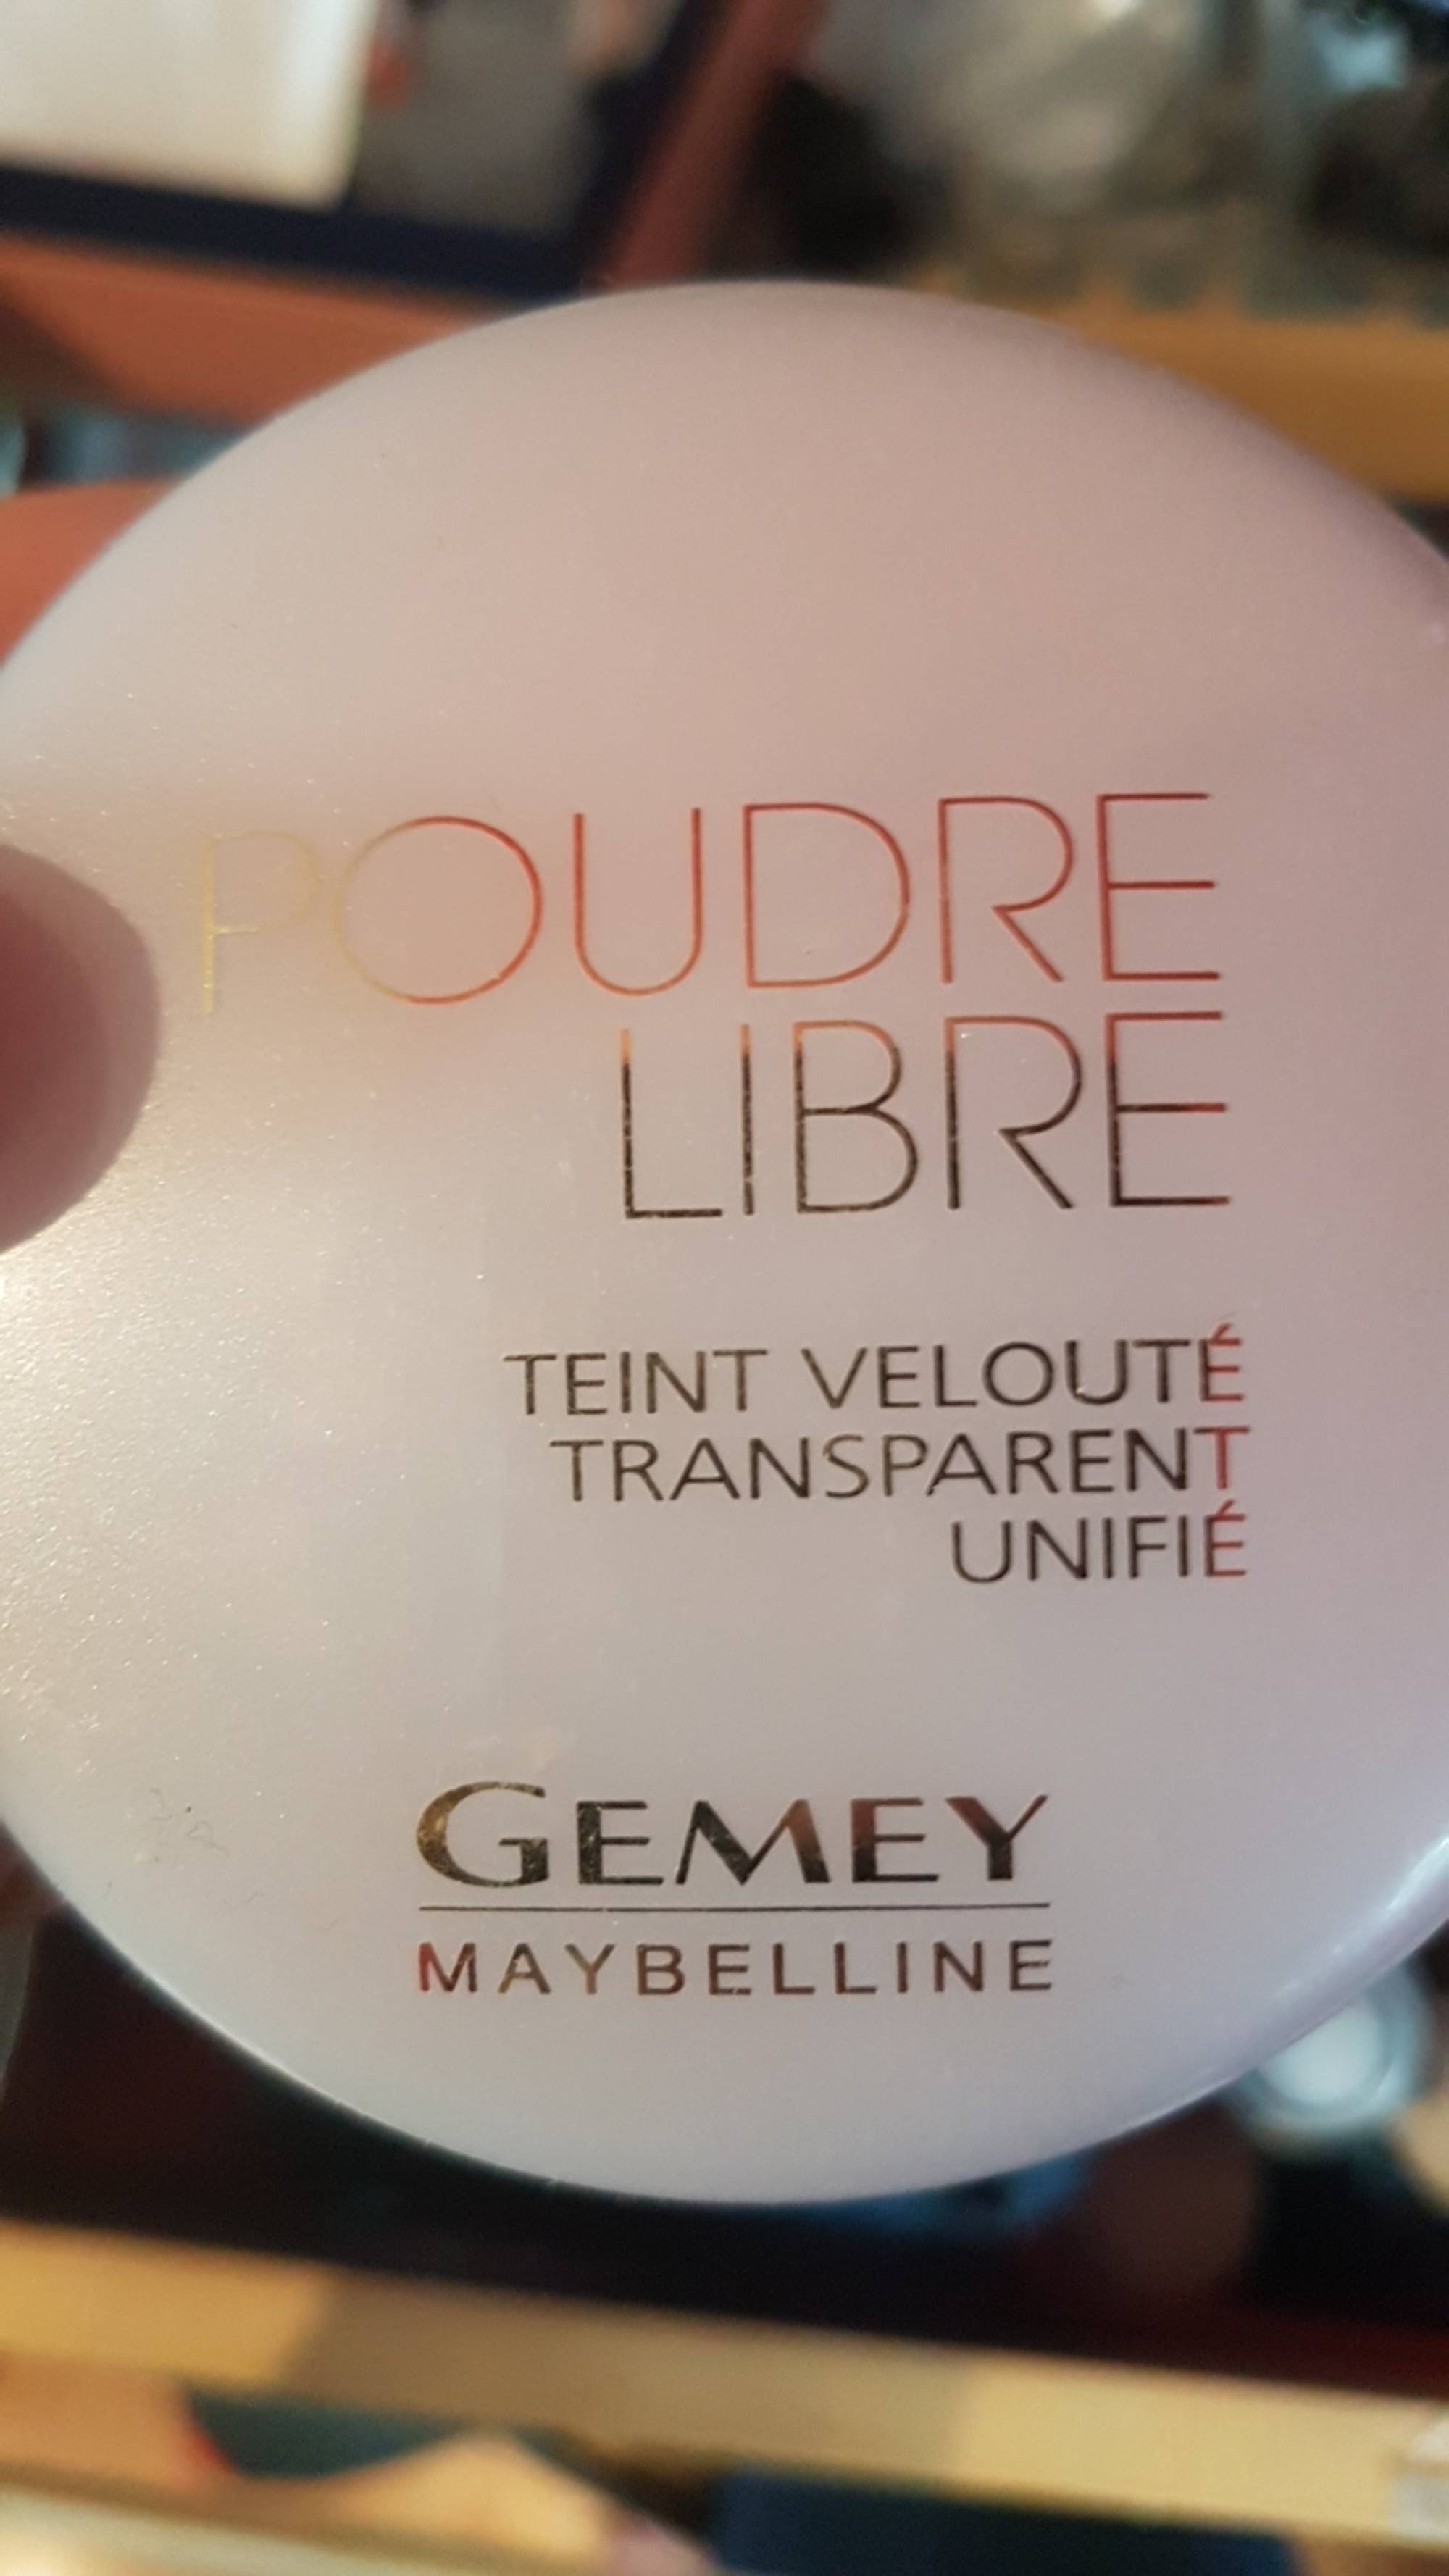 GEMEY MAYBELLINE - Poudre libre - Teint velouté transparent unifié 02 chair dorée